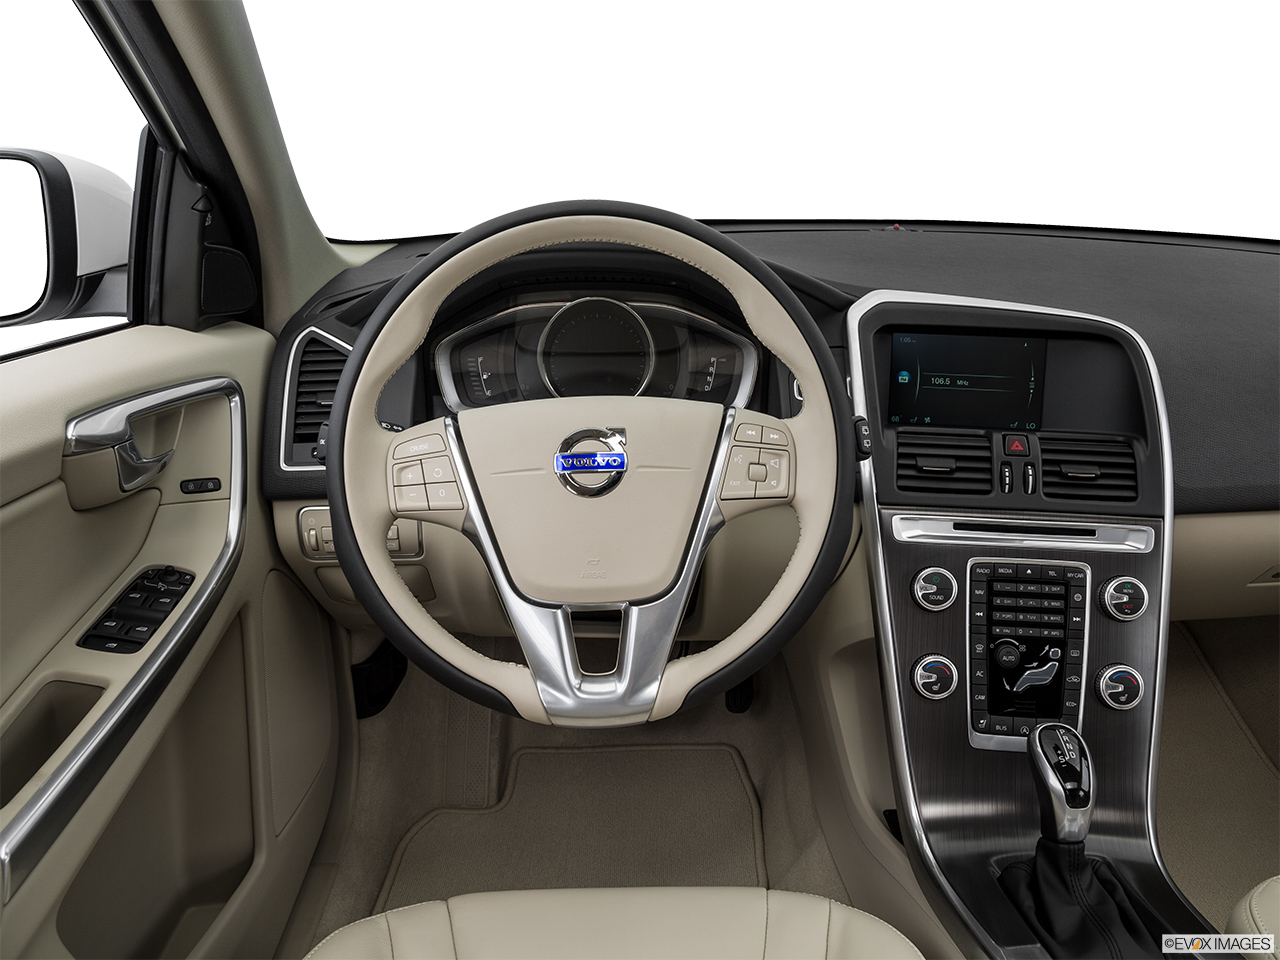 2016 Volvo XC60 T5 Drive-E FWD Premier Steering wheel/Center Console. 